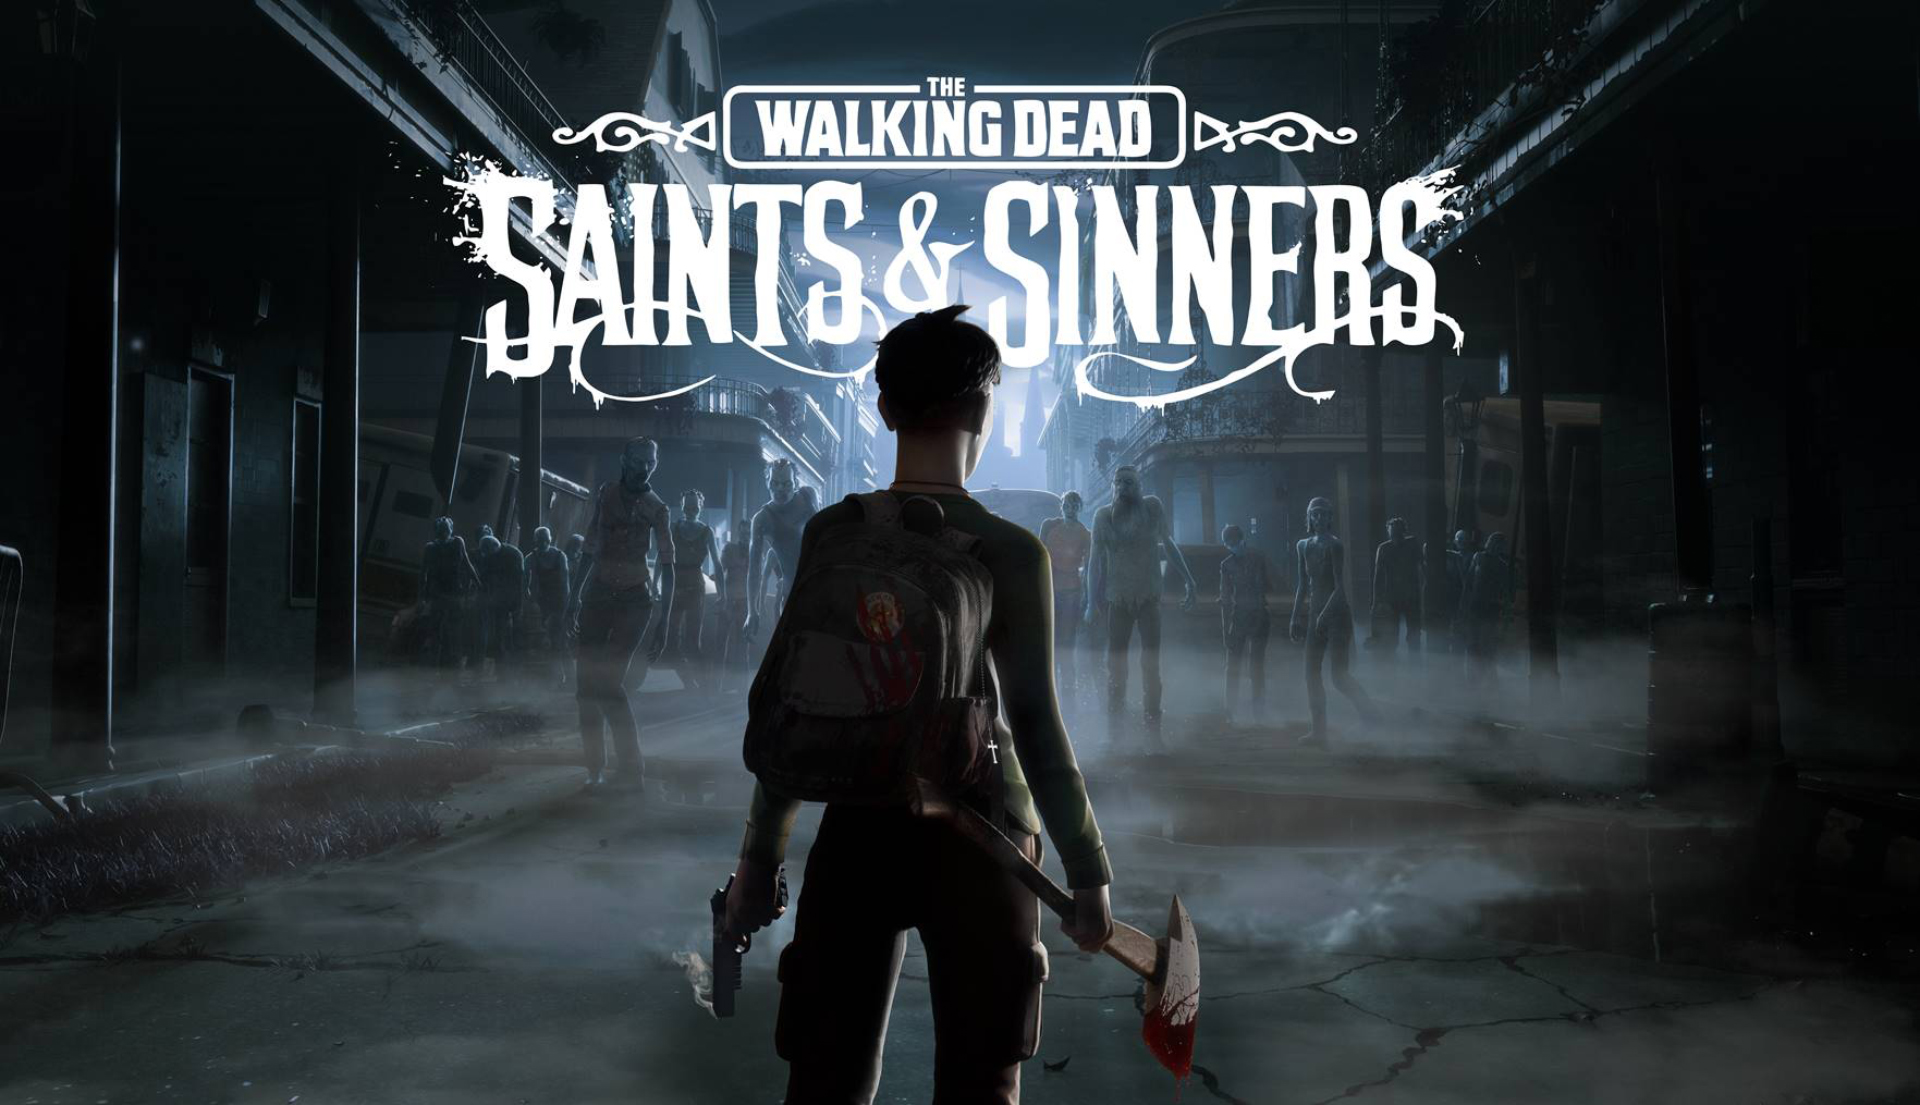 the walking dead saints & sinners download free